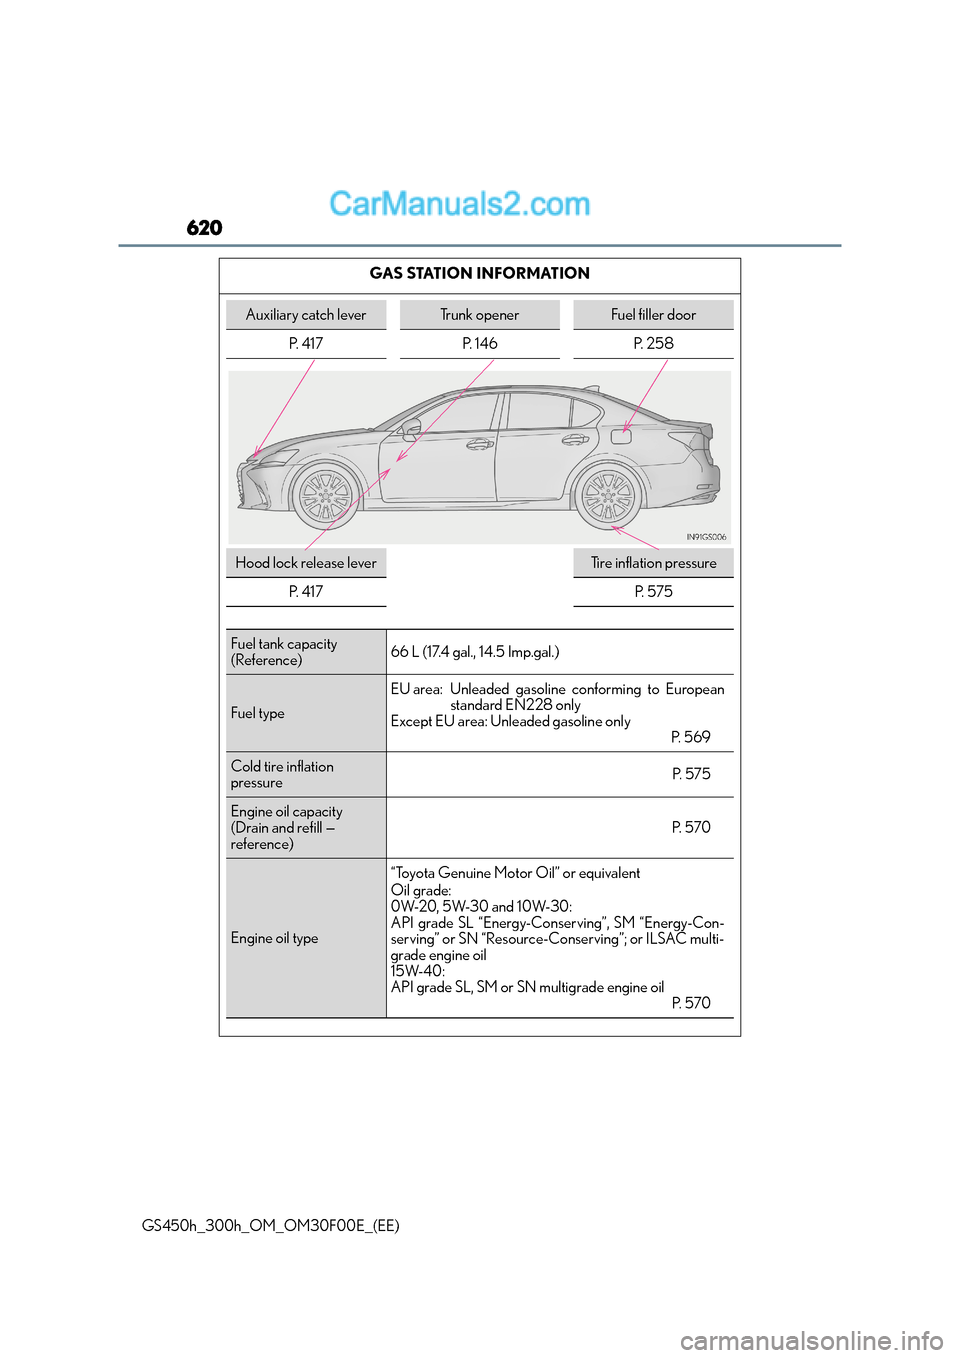 Lexus GS300h 2015 User Guide 620
GS450h_300h_OM_OM30F00E_(EE)GAS STATION INFORMATION
Auxiliary catch leverTrunk openerFuel filler door
P.  4 1 7 P.  1 4 6 P.  2 5 8
Hood lock release leverTi r e  i n f l a t i o n  p r e s s u r 